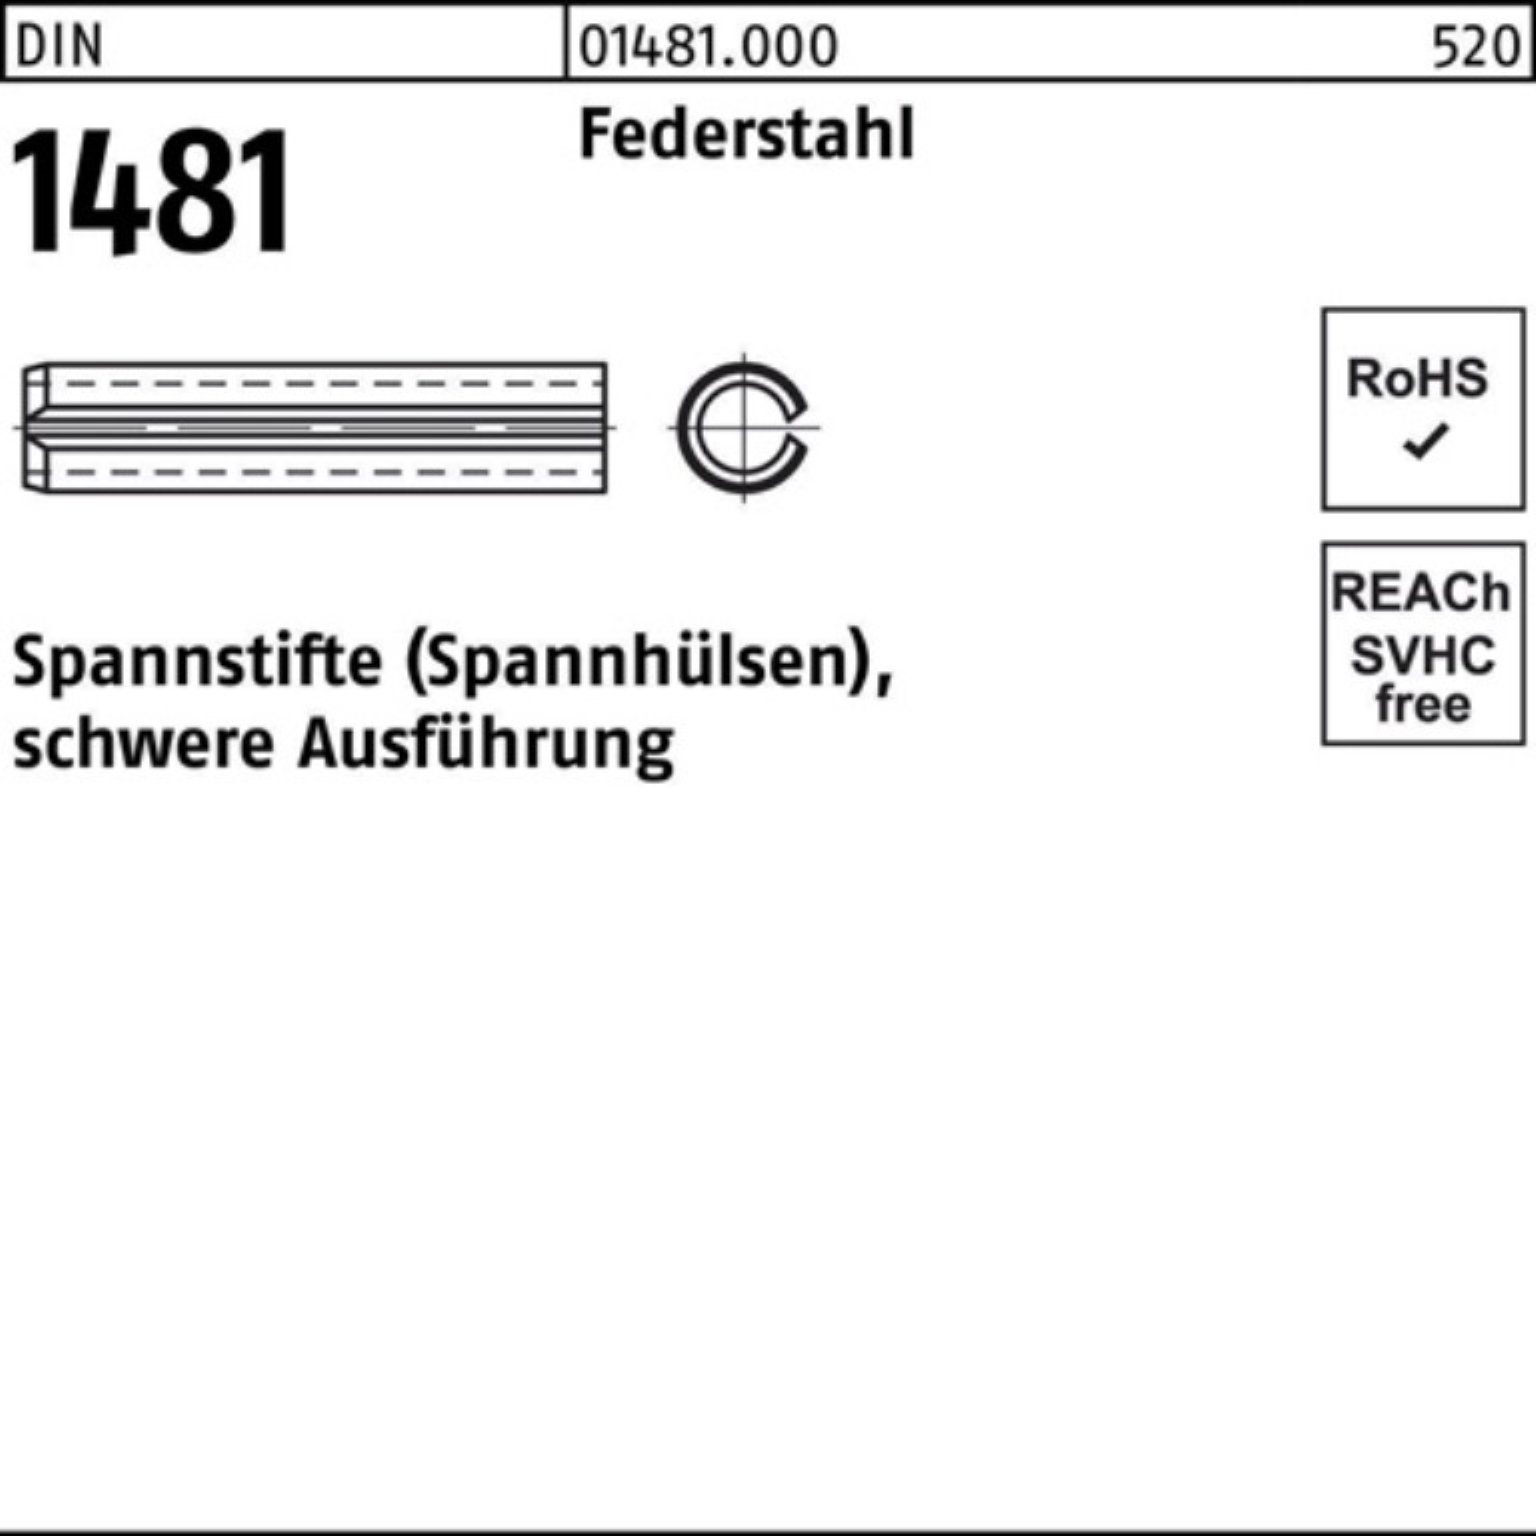 Reyher Spannstift 100er Pack Spannstift DIN 1481 10x 28 Federstahl schwere Ausführung 1